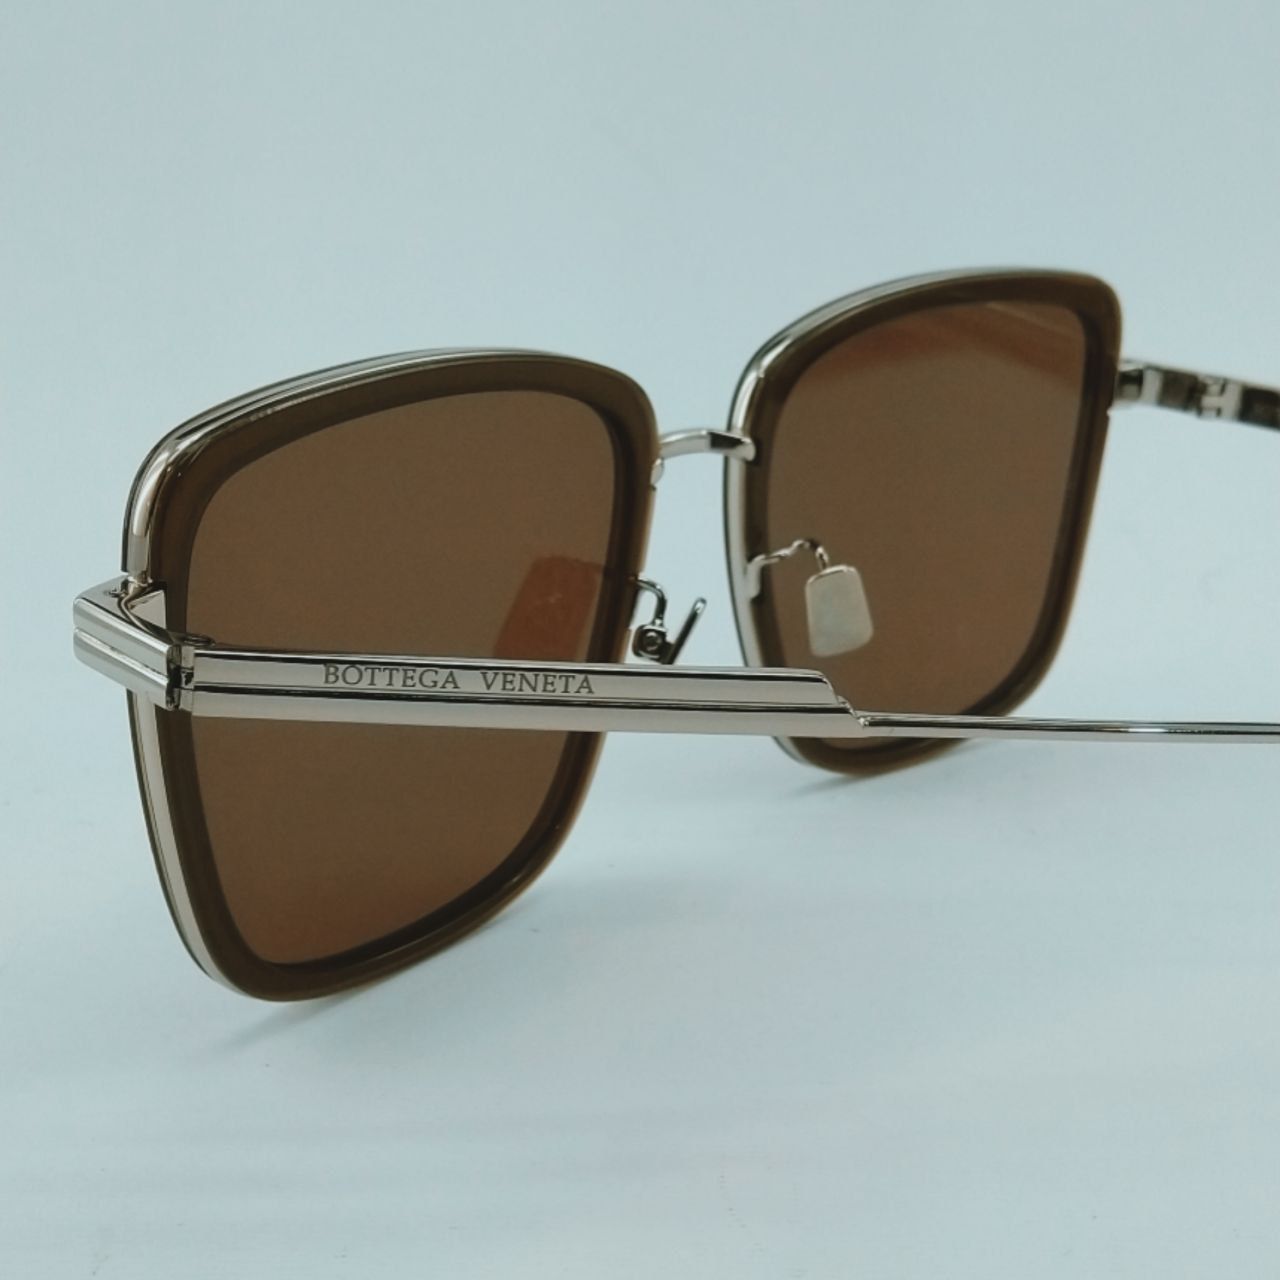 عینک آفتابی بوتگا ونتا مدل BV1008SK 003 -  - 7